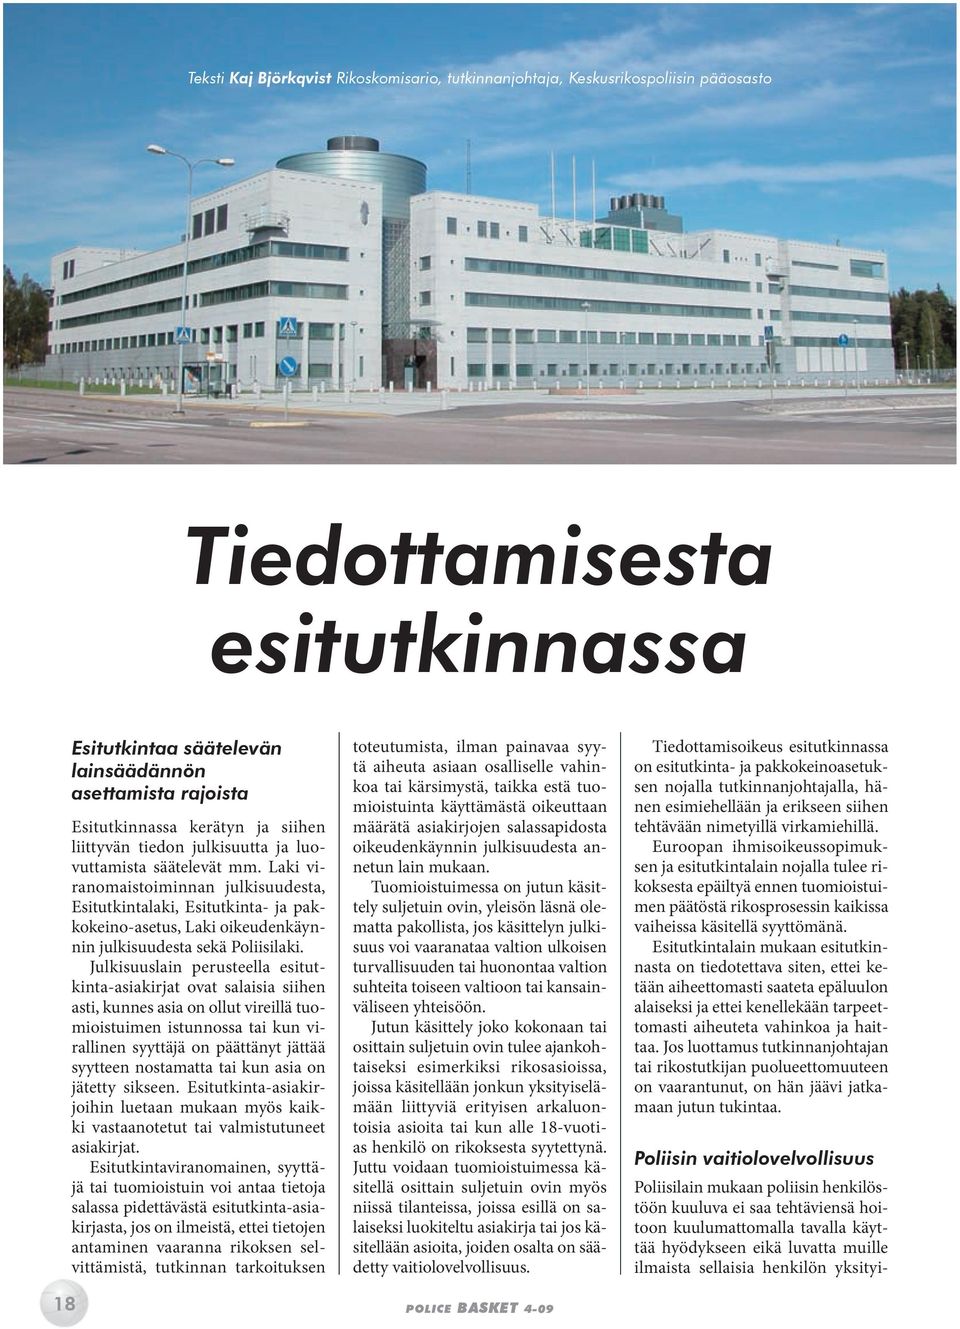 Laki viranomaistoiminnan julkisuudesta, Esitutkintalaki, Esitutkinta- ja pakkokeino-asetus, Laki oikeudenkäynnin julkisuudesta sekä Poliisilaki.